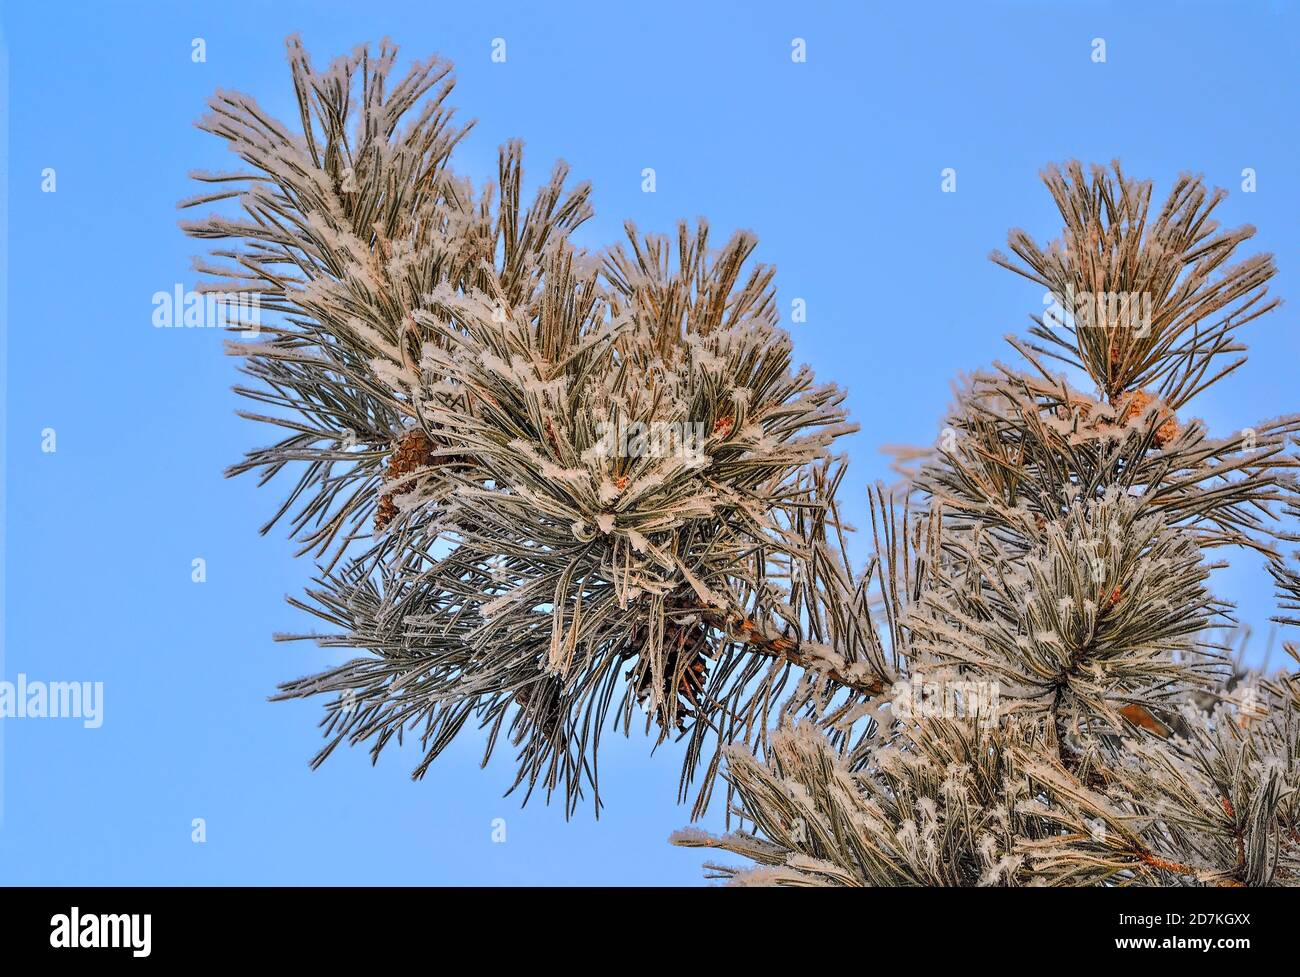 Weißer Schnee und Raureif auf Pine Tree Branch mit Kegeln in der Nähe auf und blauer Himmel. Grüne Nadeln von Koniferen Baum mit Rauhreif bedeckt bei Sunshine Stockfoto